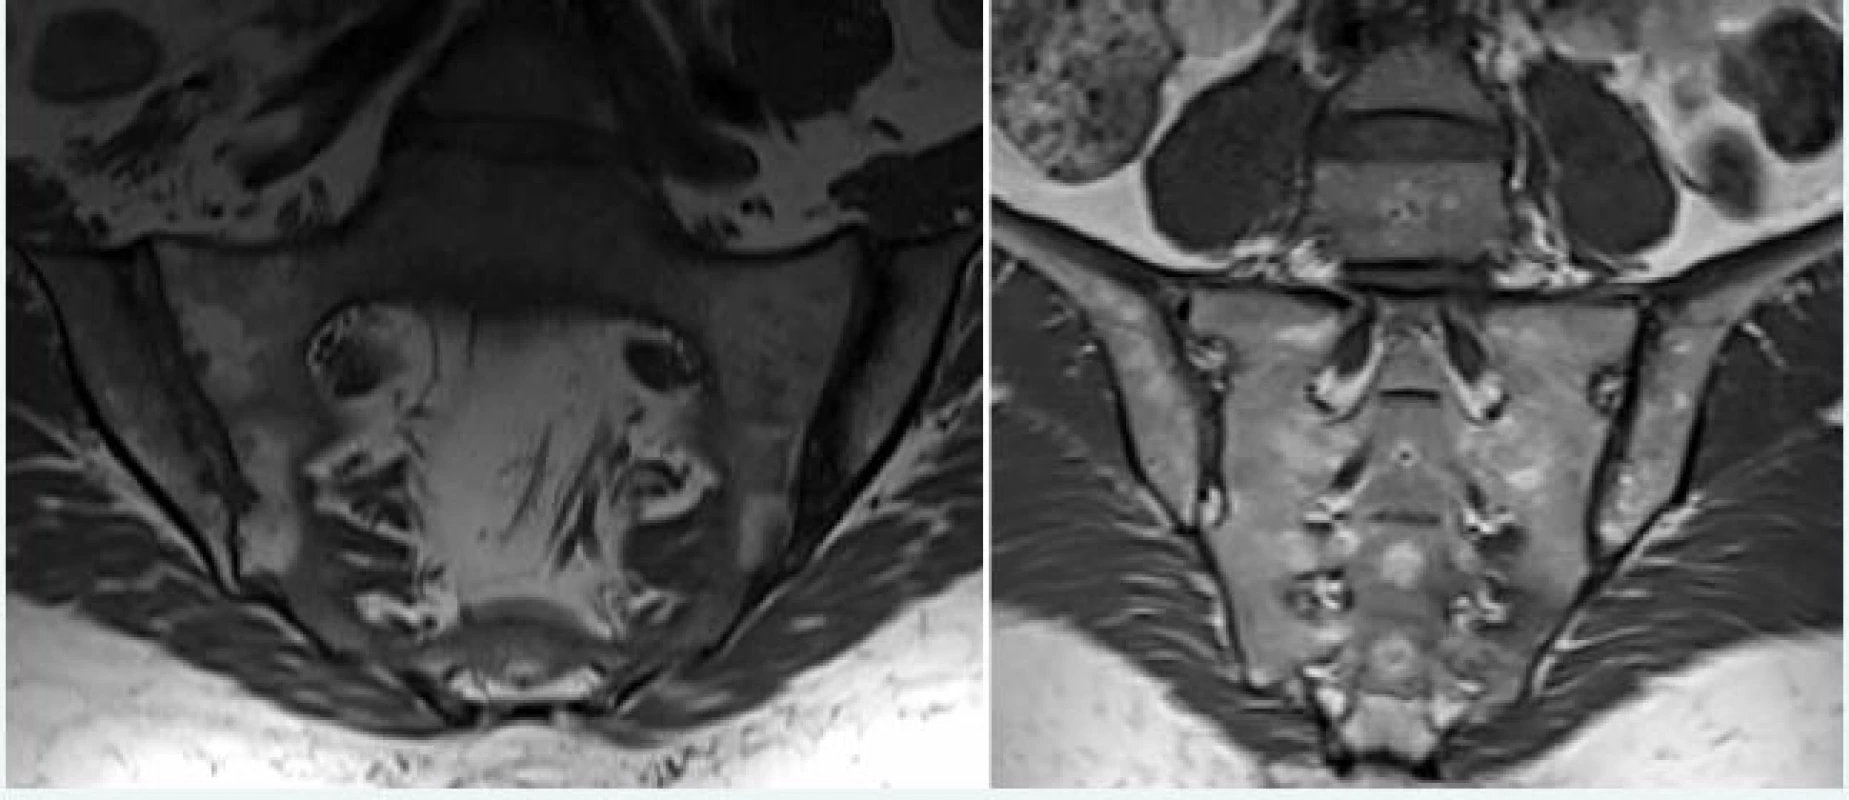 Tuková konverzia (metaplázia) kostnej drene u pacienta s axiálnou SpA. Na ľavej časti obrázka prítomný hyperintezívny signál v T1W obraze lokalizovaný subchondrálne, prítomnosť početných erózií SI skĺbenia zvyšuje pravdepodobnosť zápalovej etiológie. Na pravej časti obrázka prítomná heterogénna tuková infiltrácia v strednej časti sakrálnej kosti (interforaminálna oblasť), nesúvisiaca so SI kĺbom u zdravého jedinca, netypická pre SpA. Archív autora